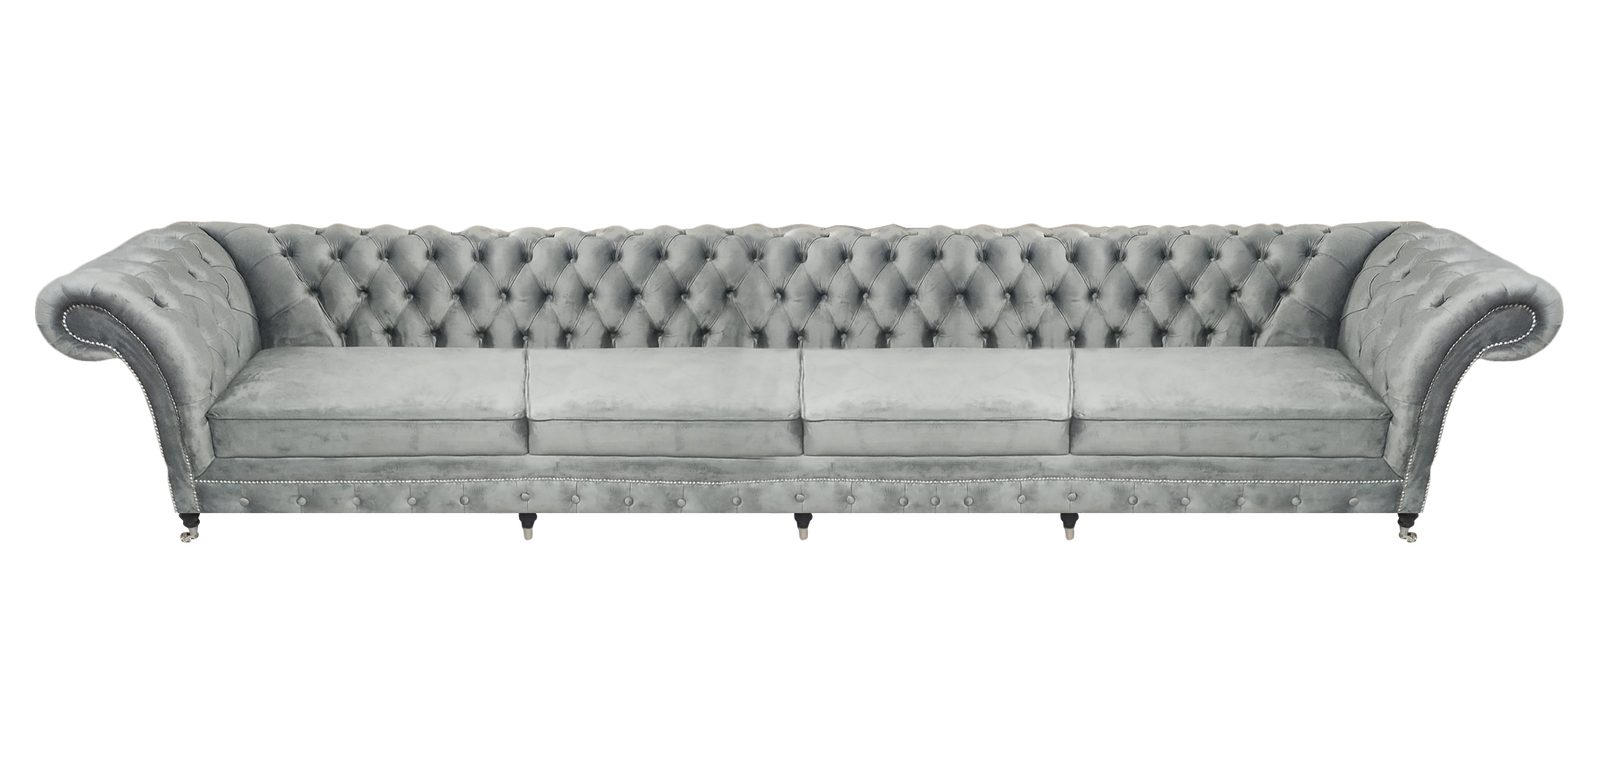 JVmoebel Chesterfield-Sofa Viersitzer Sofa Couch Designer Grau Polstermöbel Luxus Wohnzimmer, 1 Teile, Made in Europa